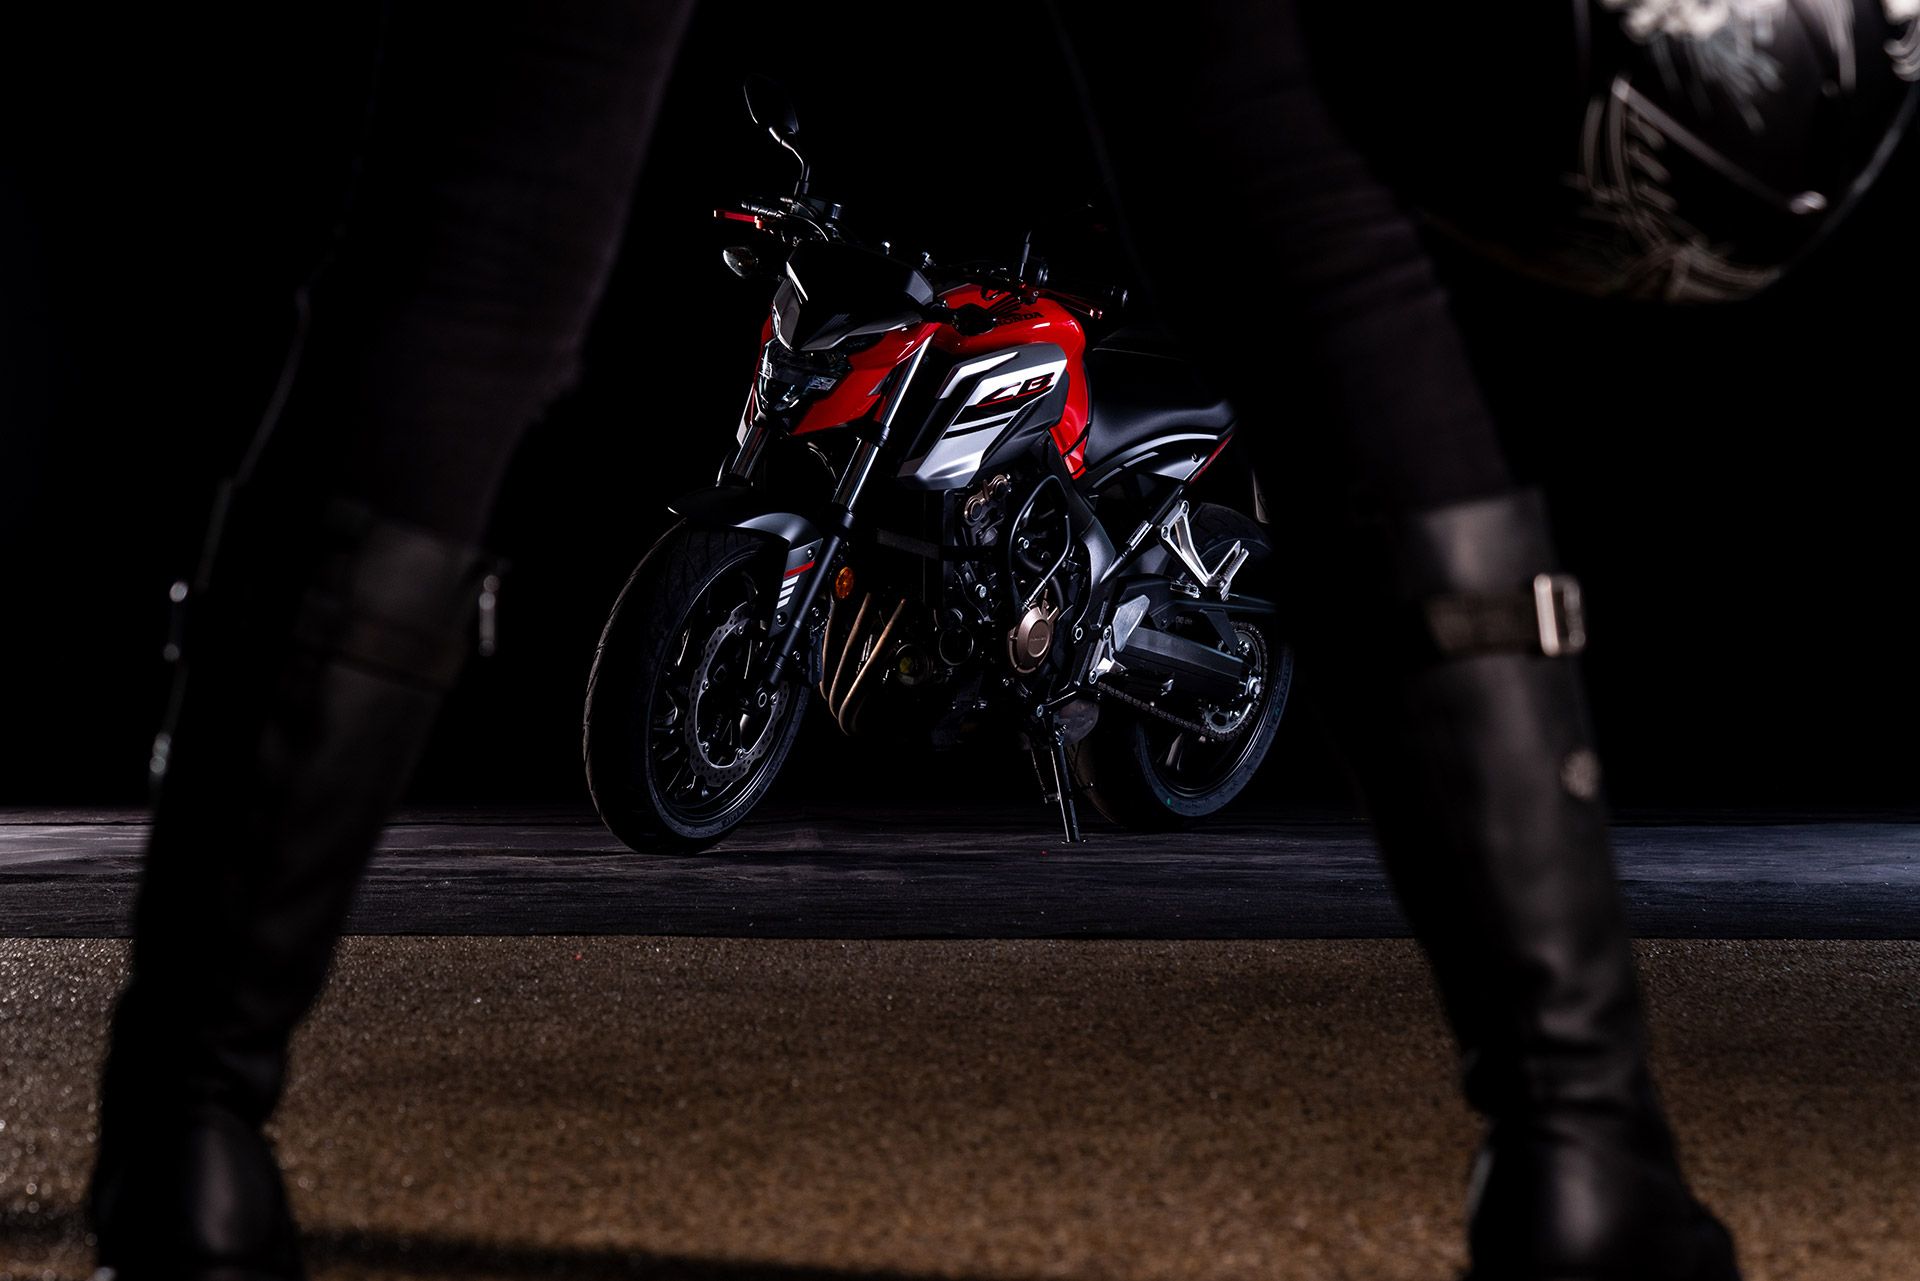 Fahrschule Berlin allroad Motorrad Honda CB650F mit Frauenbeinen